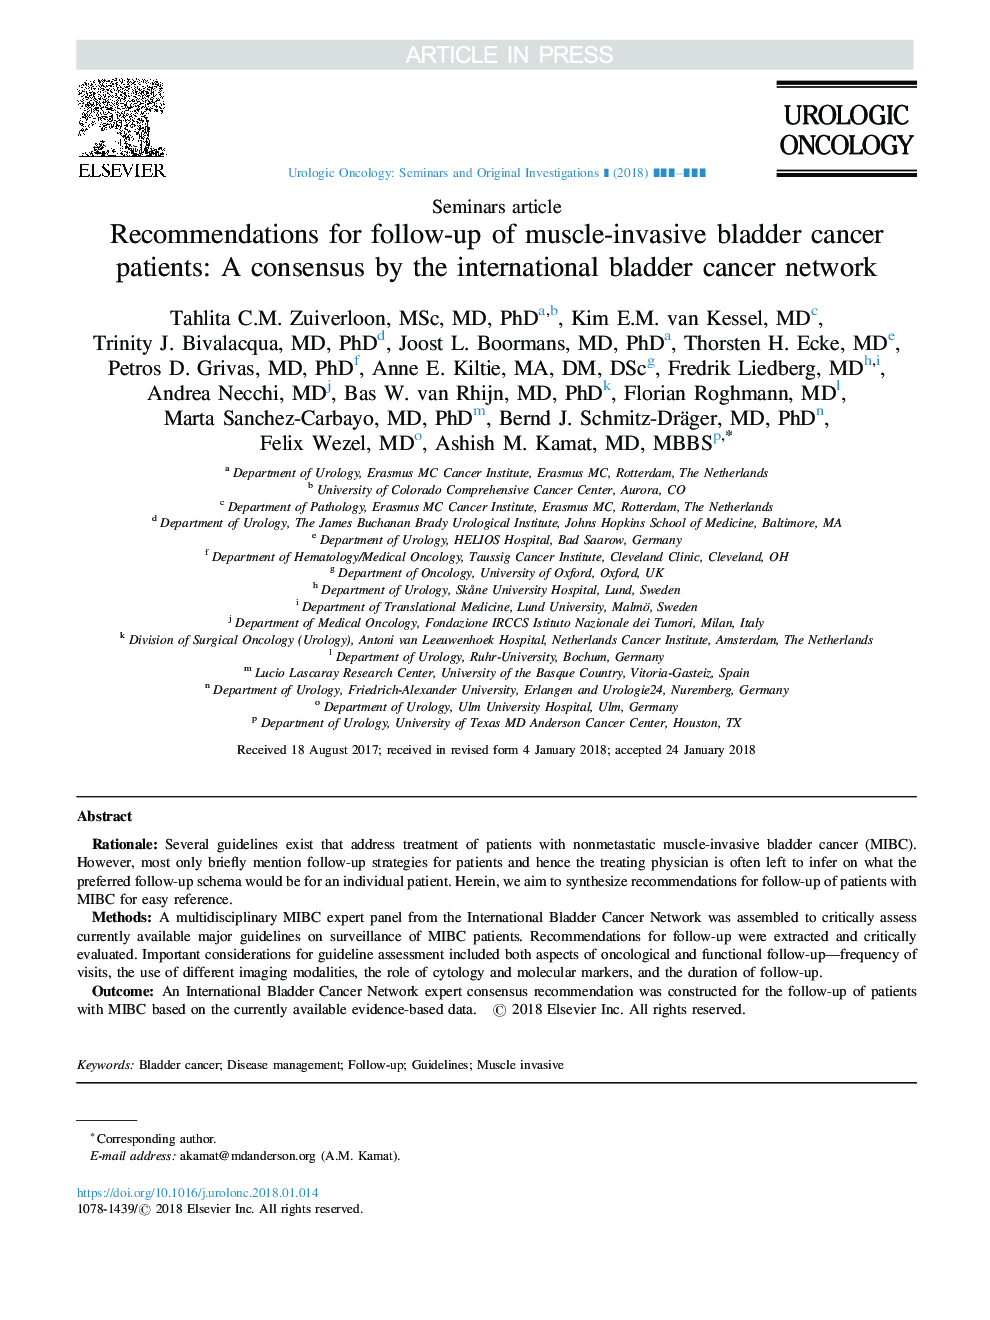 توصیه هایی برای پیگیری بیماران مبتلا به سرطان مثانه عضلانی: توافق توسط شبکه بین المللی سرطان مثانه